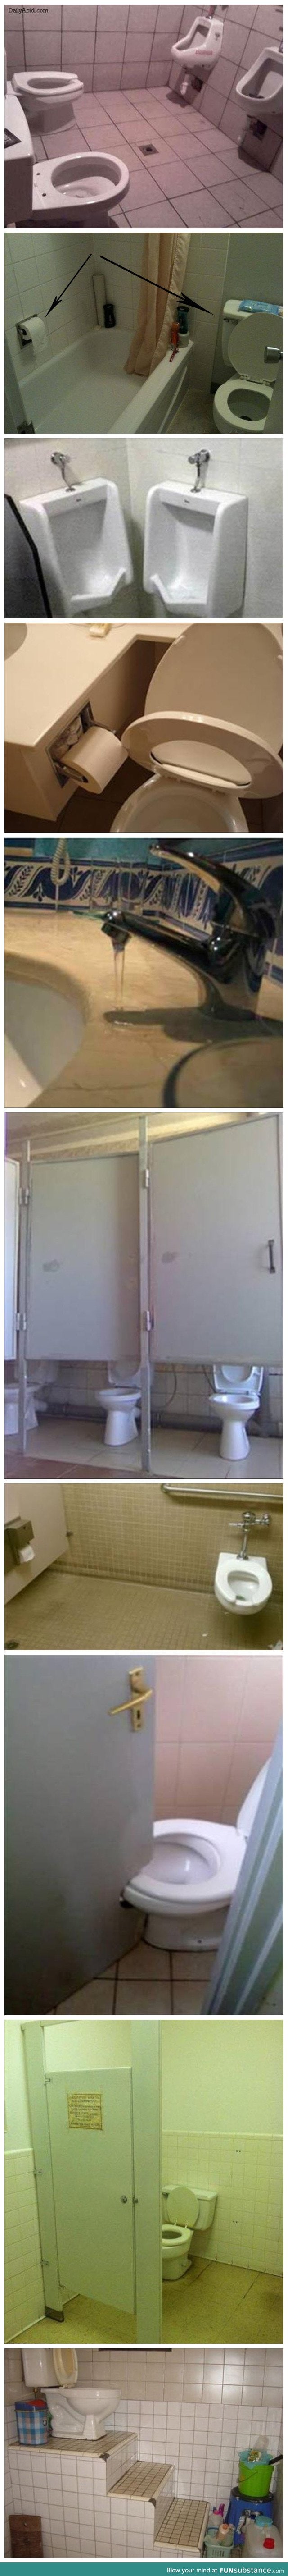 Someone has no clue how a bathroom works...